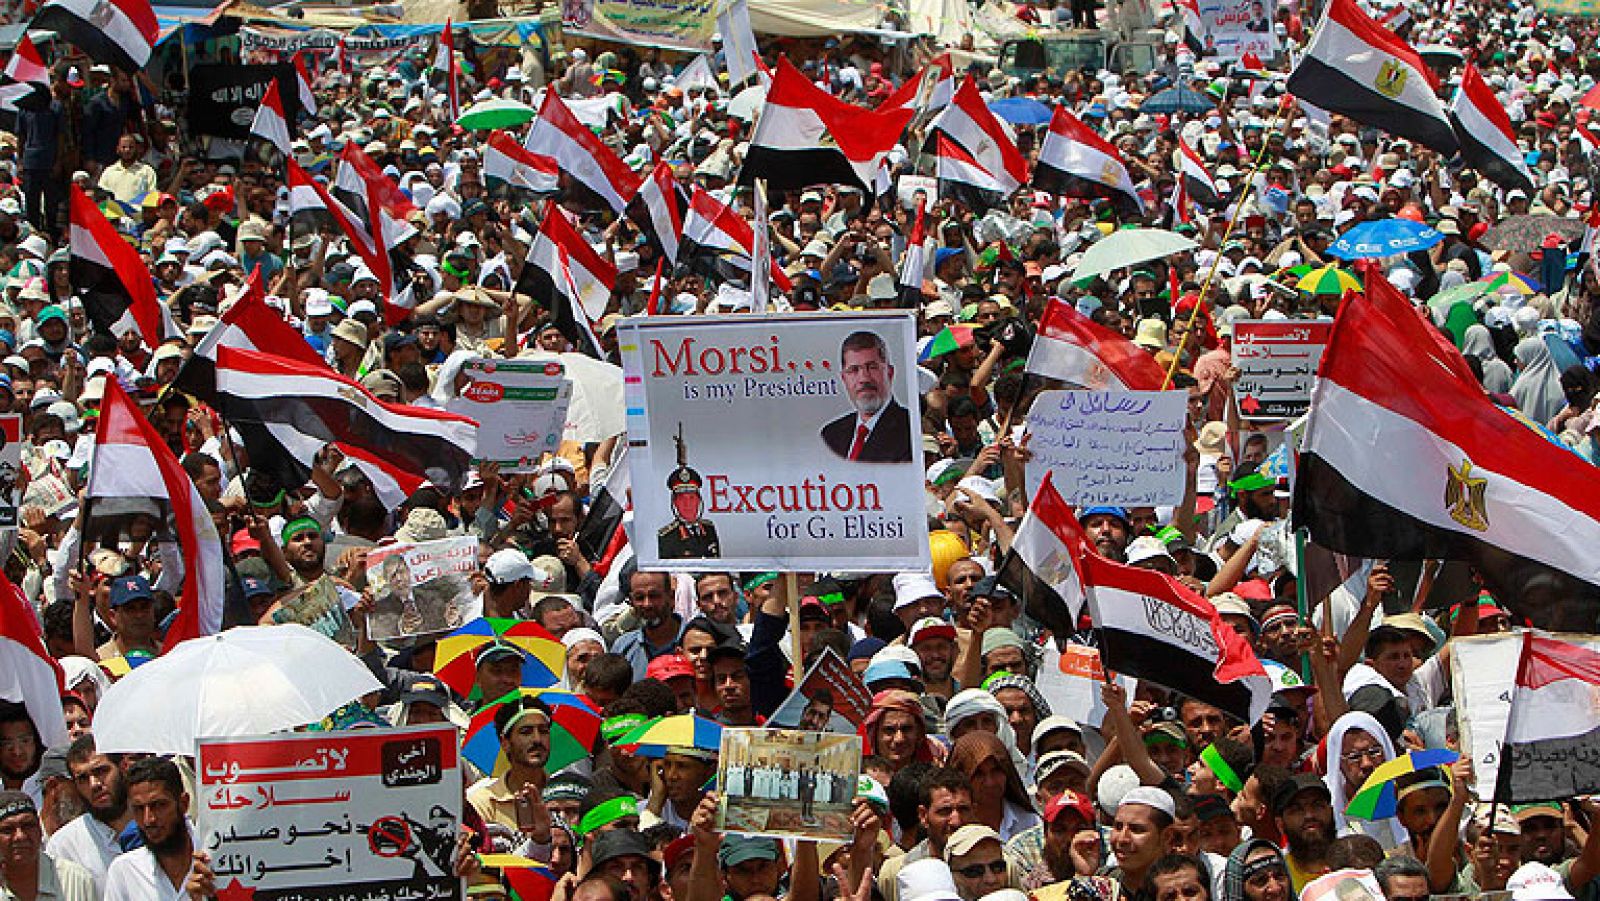  Los partidarios del depuesto presidente de Egipto, Mohamed Morsi han vuelto a tomar este viernes las calles de El Cairo para exigir su regreso al poder, con multitudinarias marchas salpicadas por disturbios esporádicos. En lo que han denominado el denominado "viernes de la victoria", decenas de miles de personas seguidores de los Hermanos Musulmanes se han concentrado en las plazas de Rabea al Adauiya y de Al Nahda, entre fotografías de Morsi y pancartas contra el golpe militar.